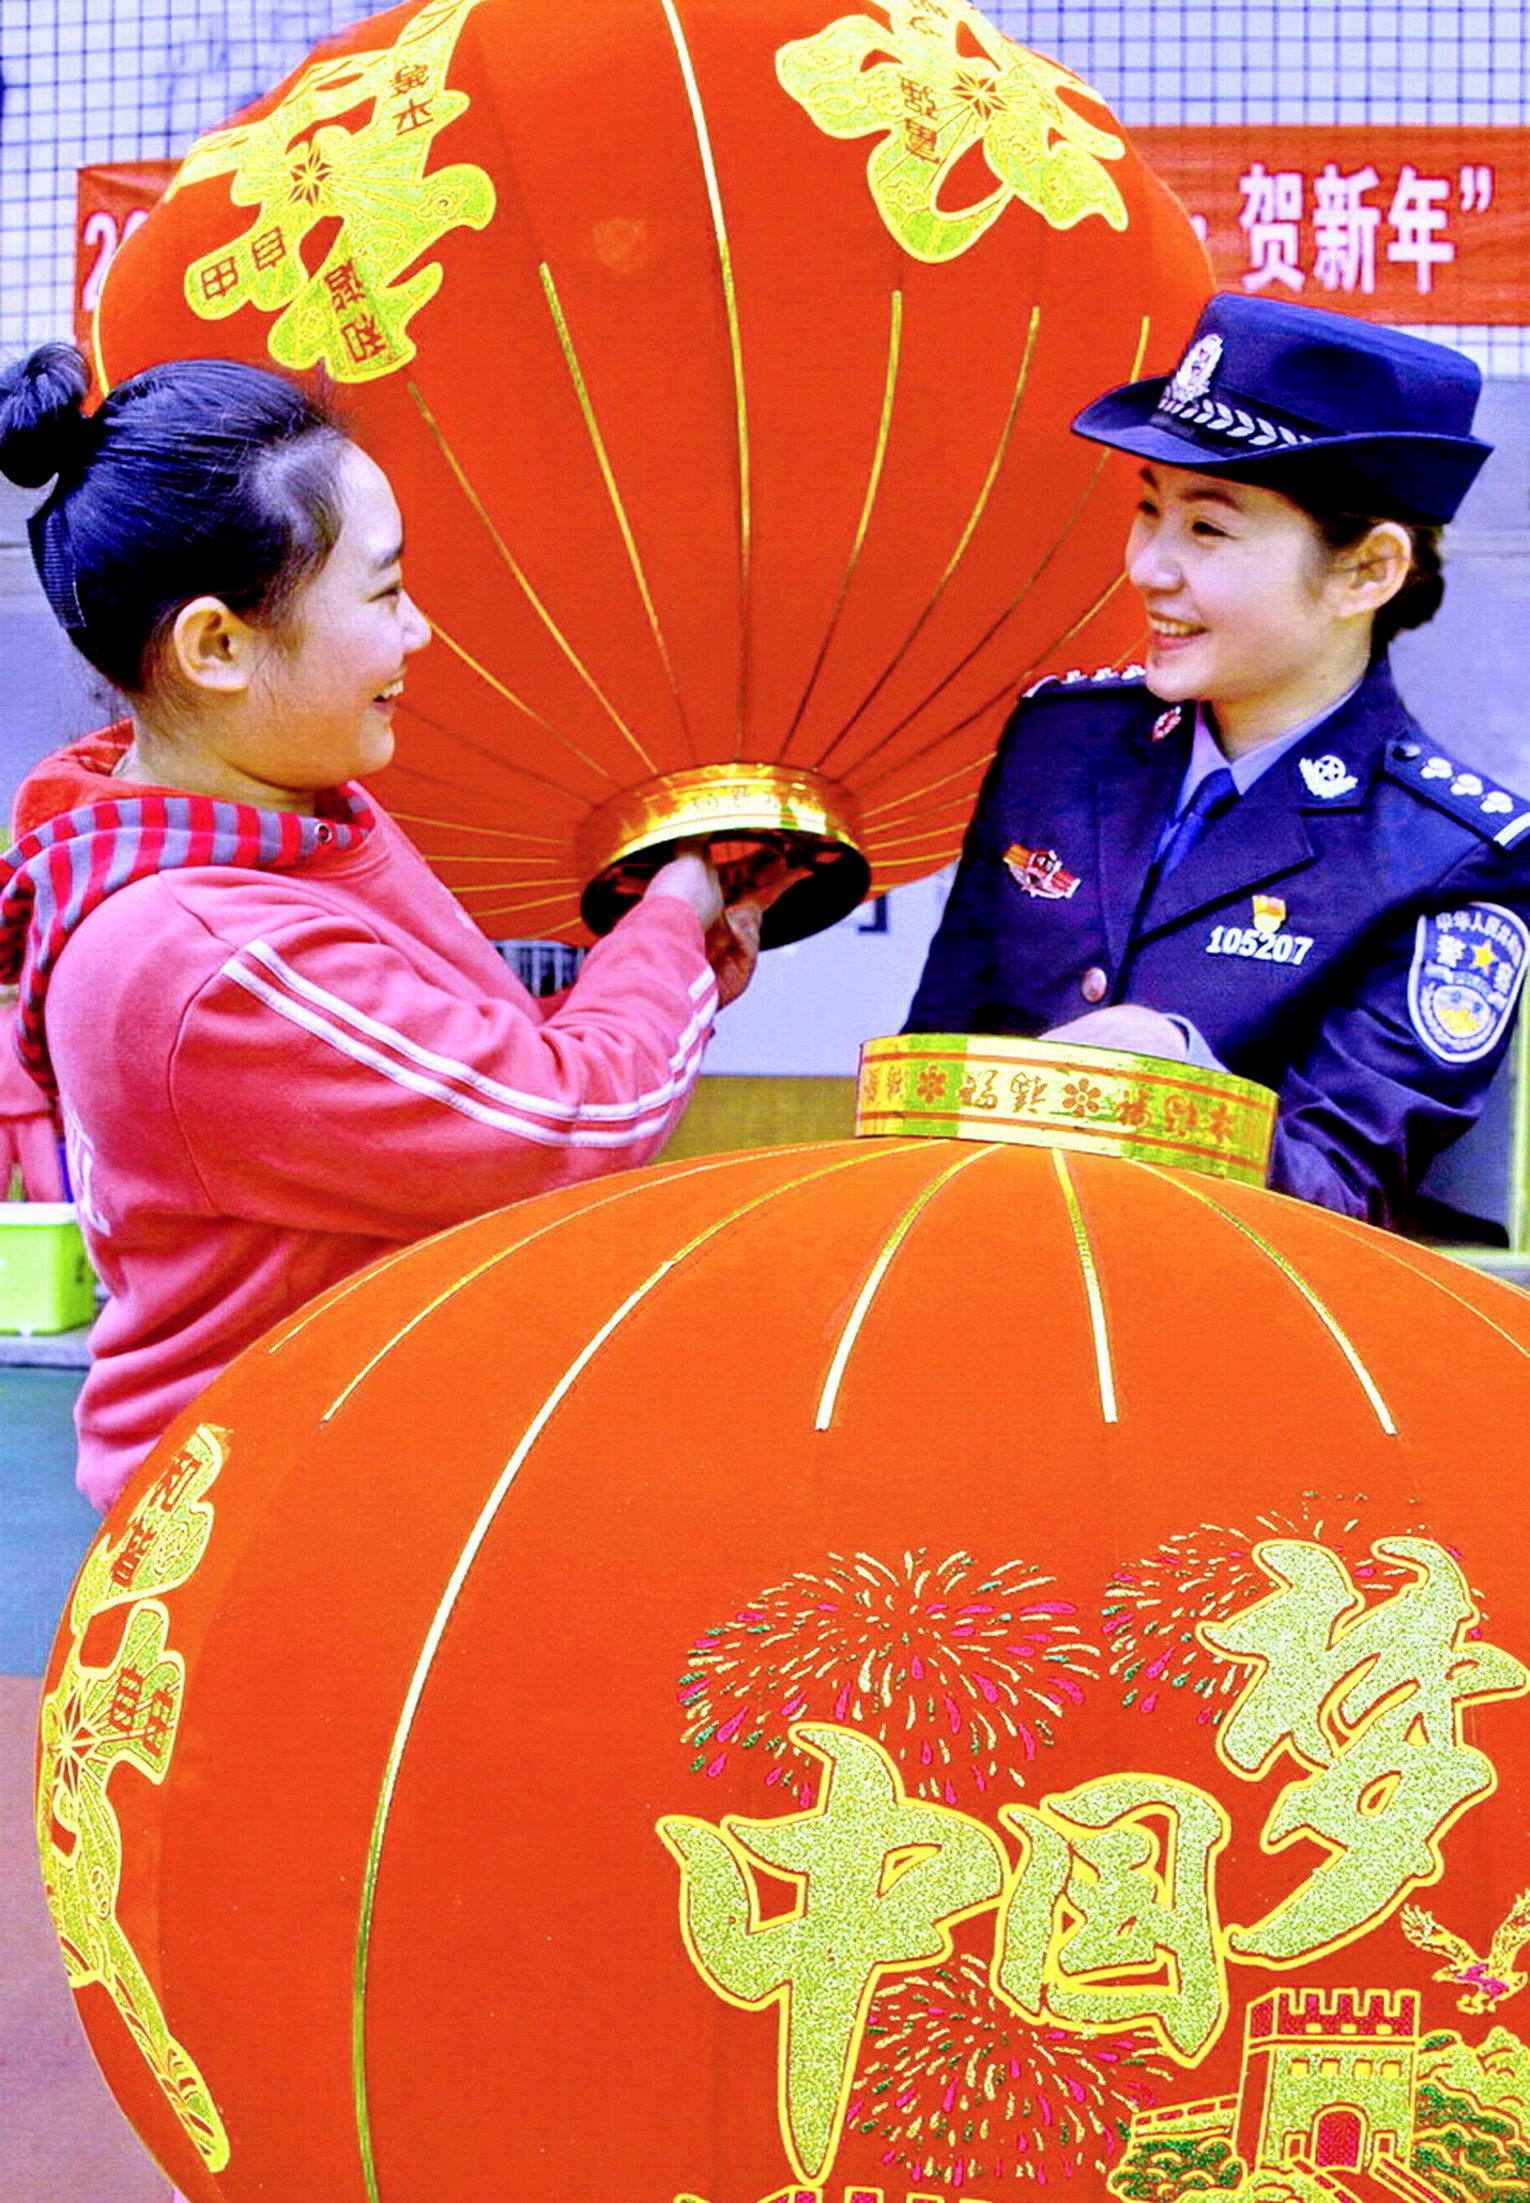 【红色影像】《中国梦幸福年》_4218.JPG